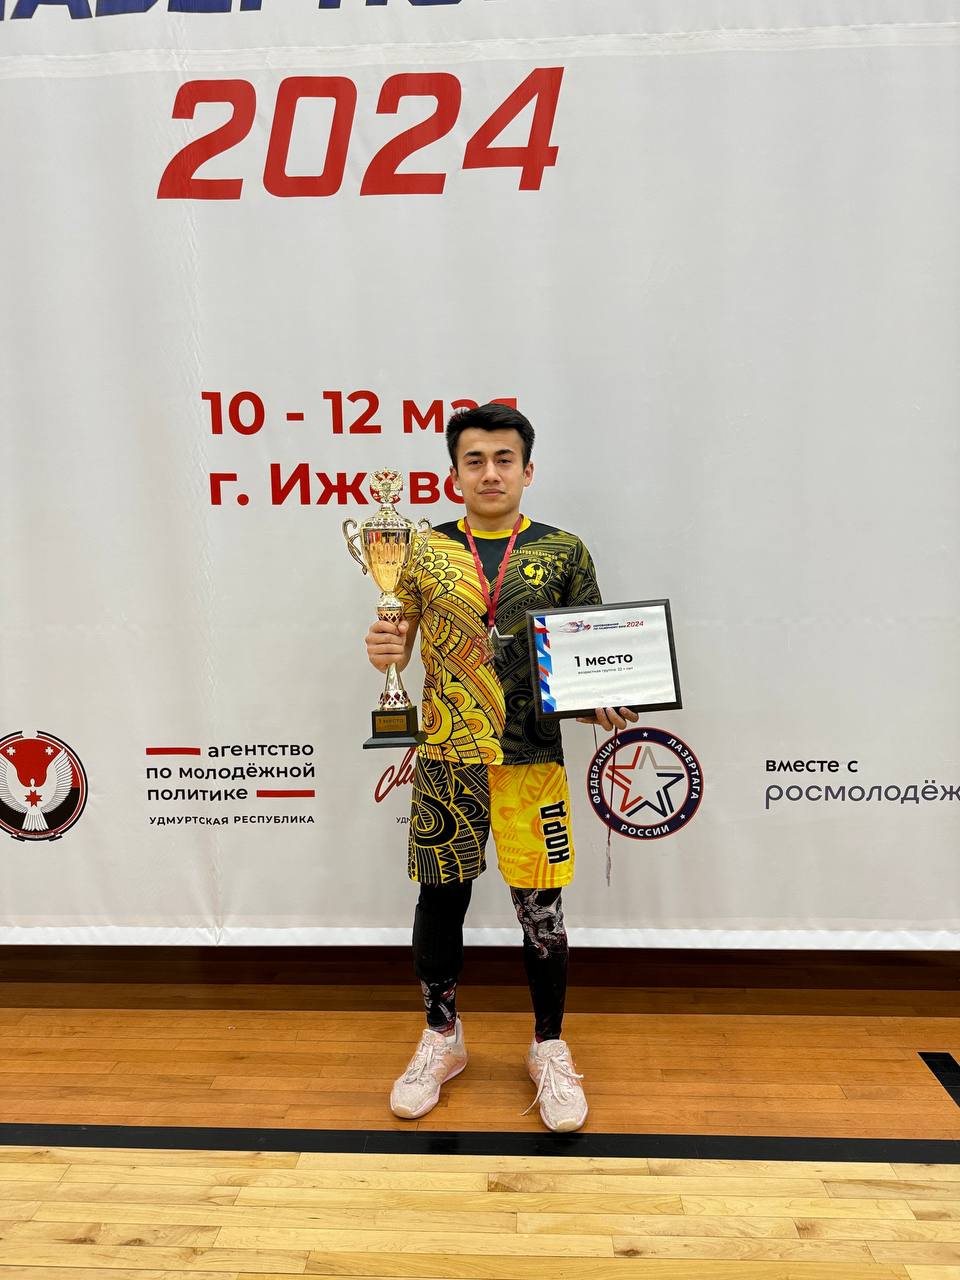 Студент РОСБИОТЕХа стал чемпионом России по лазерному бою